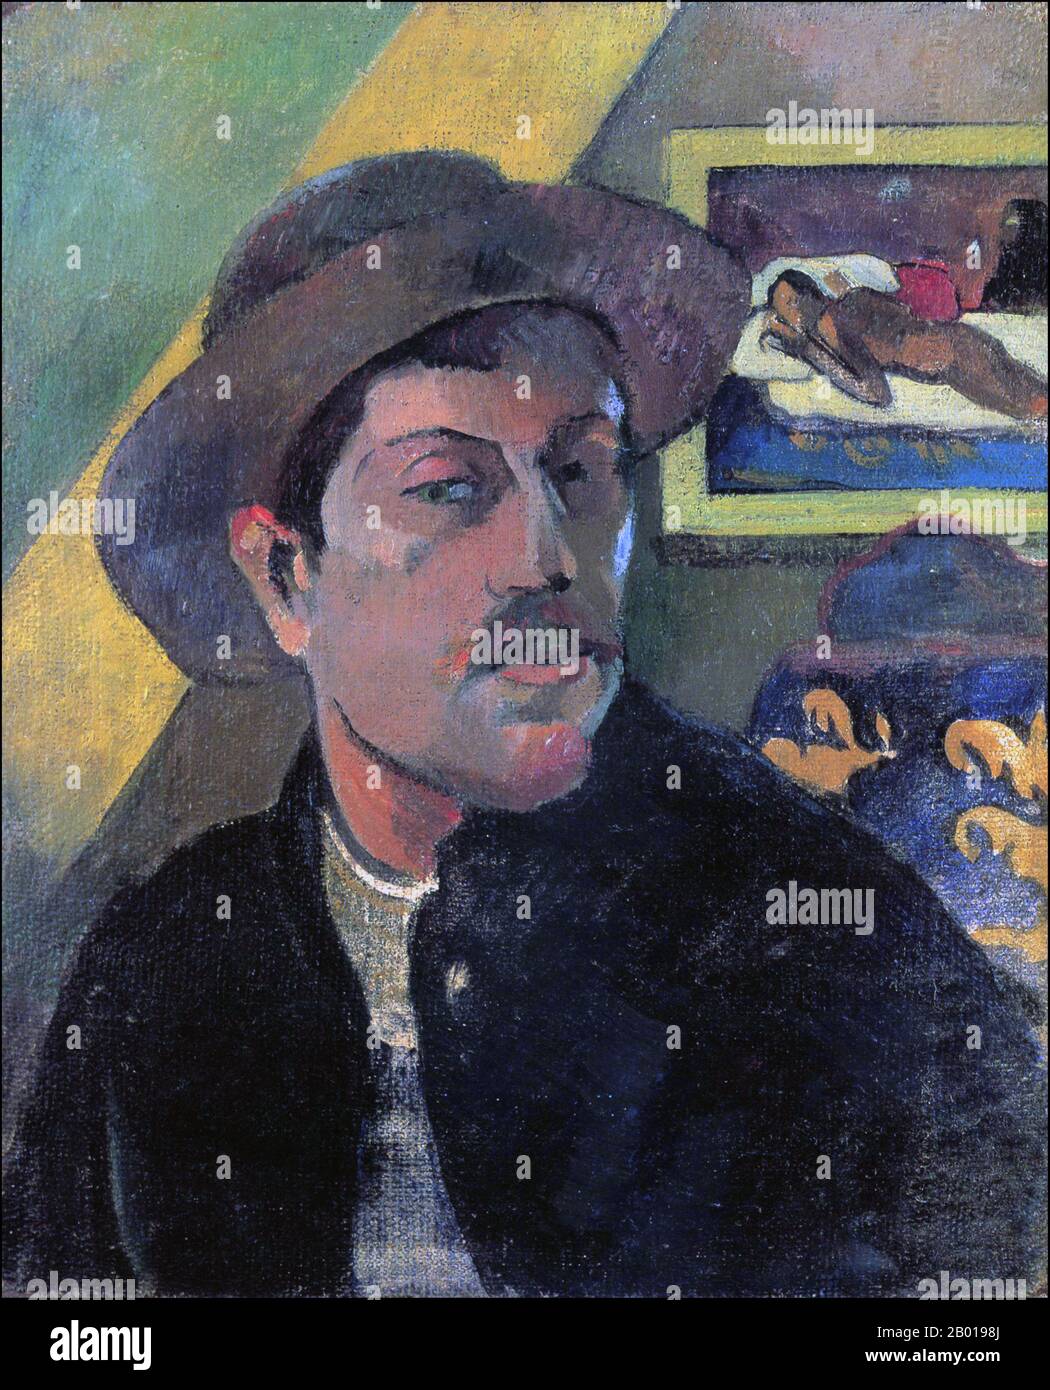 Francia/Tahiti: 'Il ritratto di pelf in un cappello'. Dipinto a olio su tela di Paul Gauguin (7 giugno 1848 - 8 maggio 1903), 1893. Paul Gauguin nacque a Parigi nel 1848 e trascorse la sua infanzia in Perù. Lavorò come agente di cambio con poco successo, e soffrì di forti depressione. Dipinse anche lui. Nel 1891, Gauguin, frustrato dalla mancanza di riconoscimento in patria e dalla mancanza di difficoltà finanziaria, salì ai tropici per sfuggire alla civiltà europea e "tutto ciò che è artificiale e convenzionale”. Il suo tempo lì, in particolare a Tahiti e nelle Isole Marquesas, è stato oggetto di grande interesse. Foto Stock